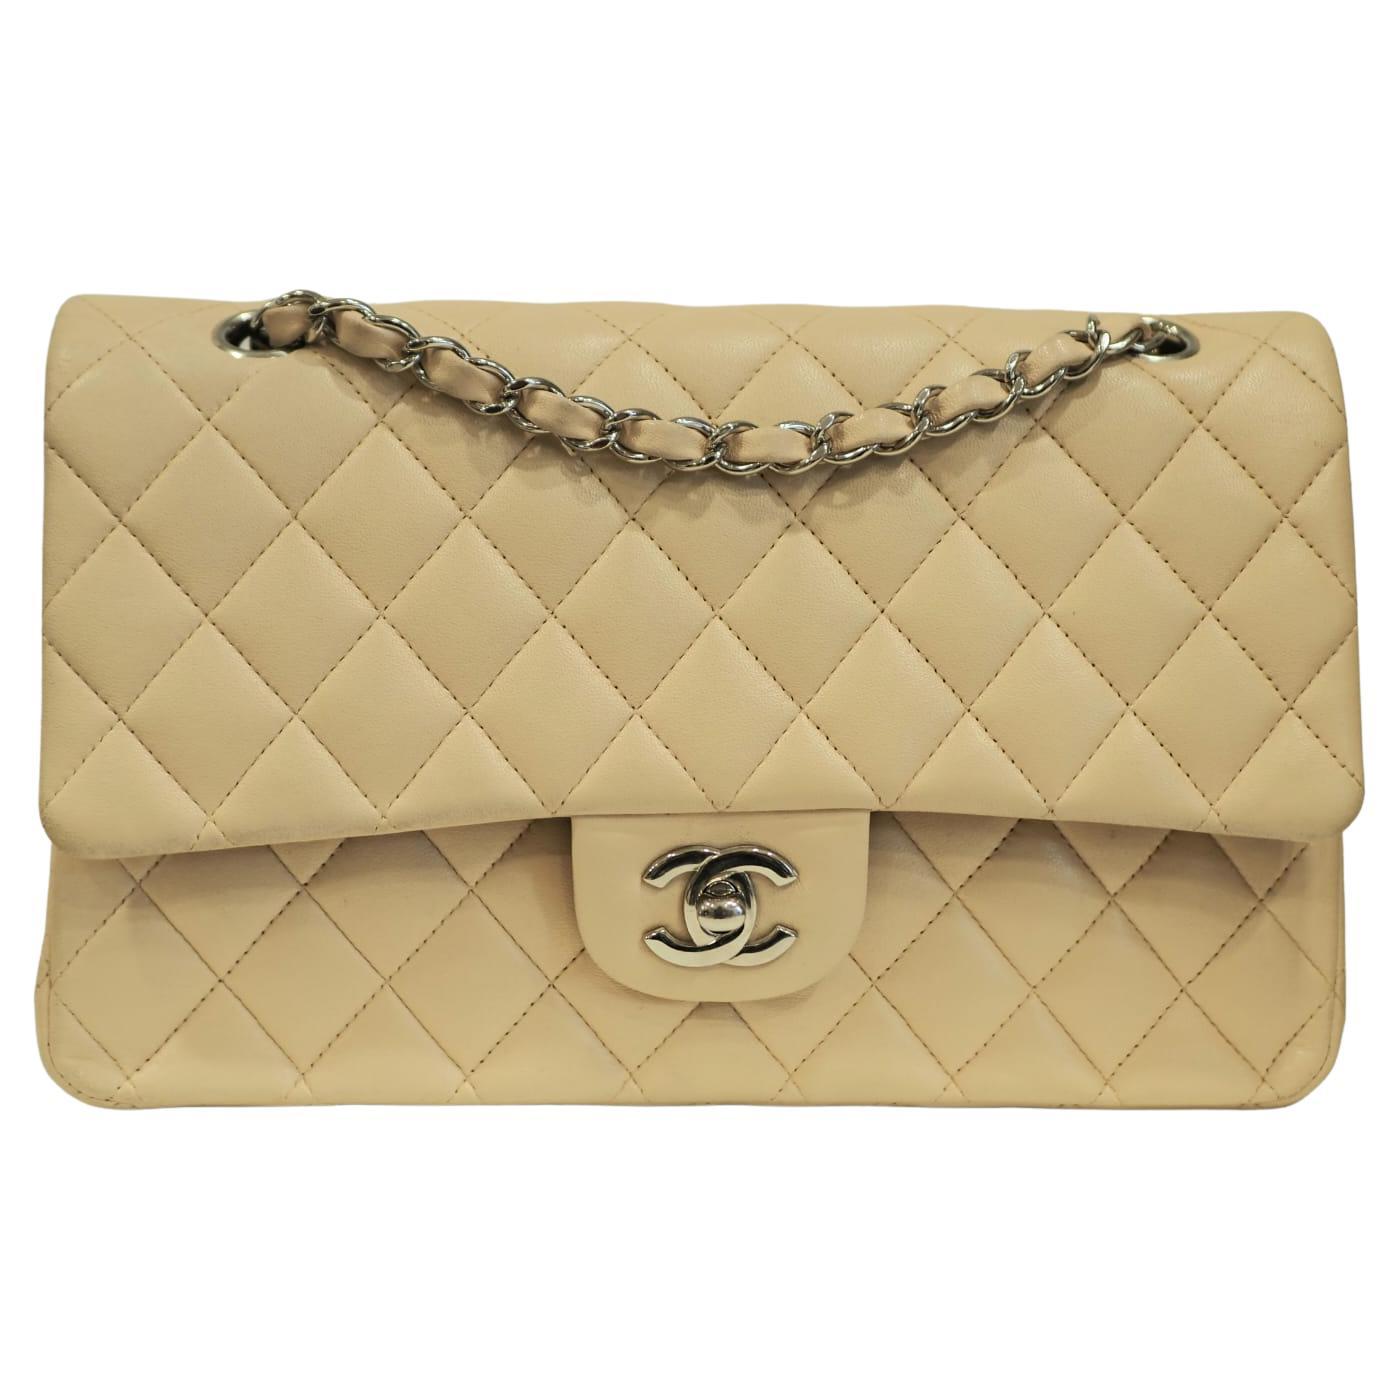 Chanel timeless beige 2.55 shoulder bag